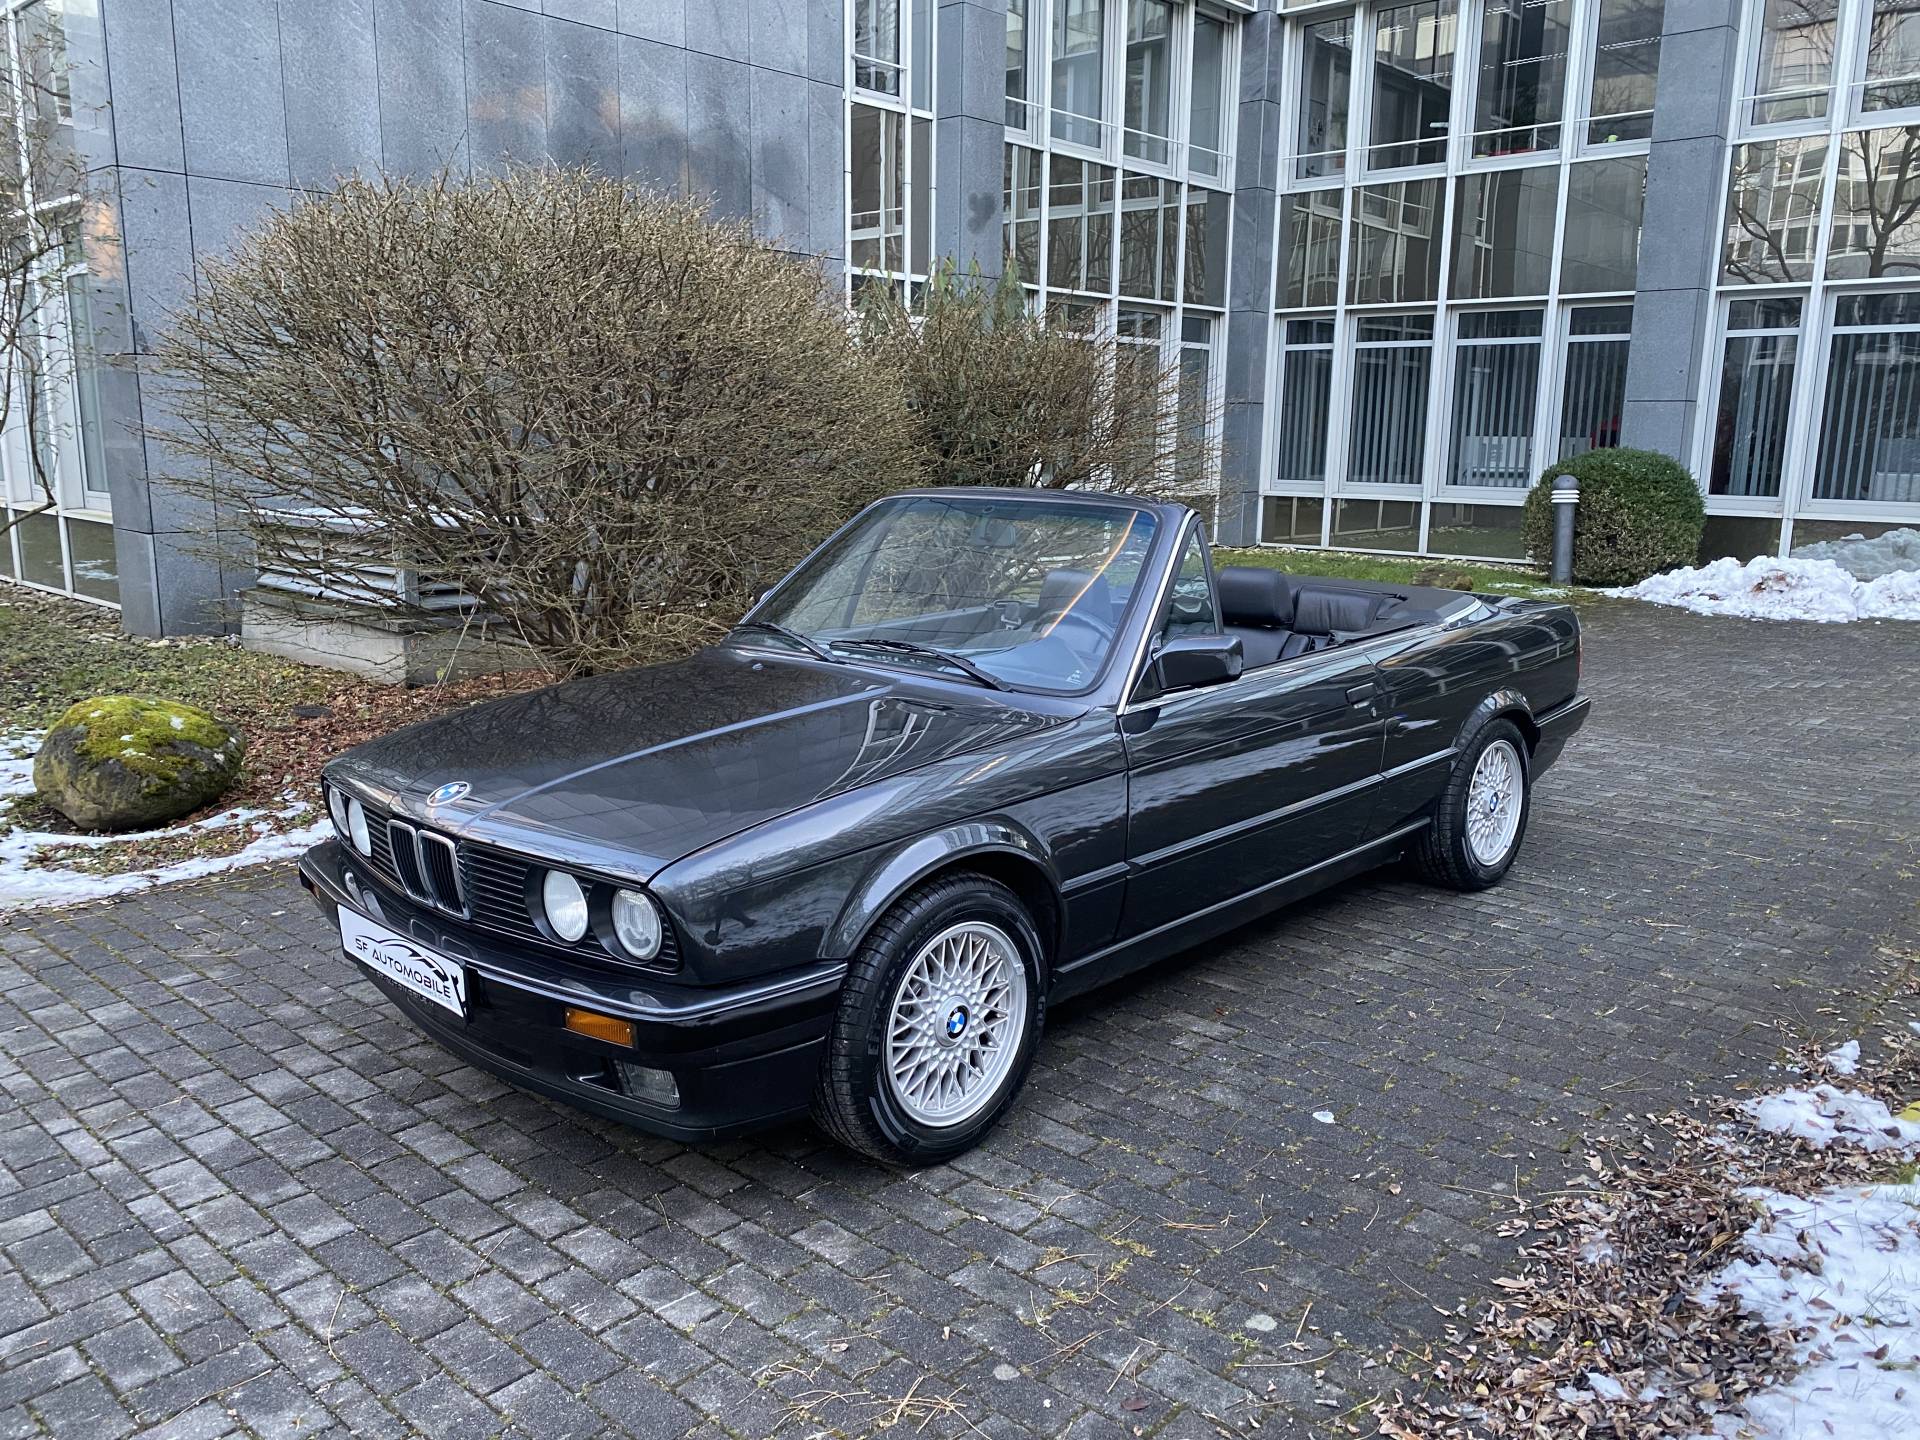 Brochure Bereid Voorzieningen For Sale: BMW 318i (1993) offered for GBP 20,490